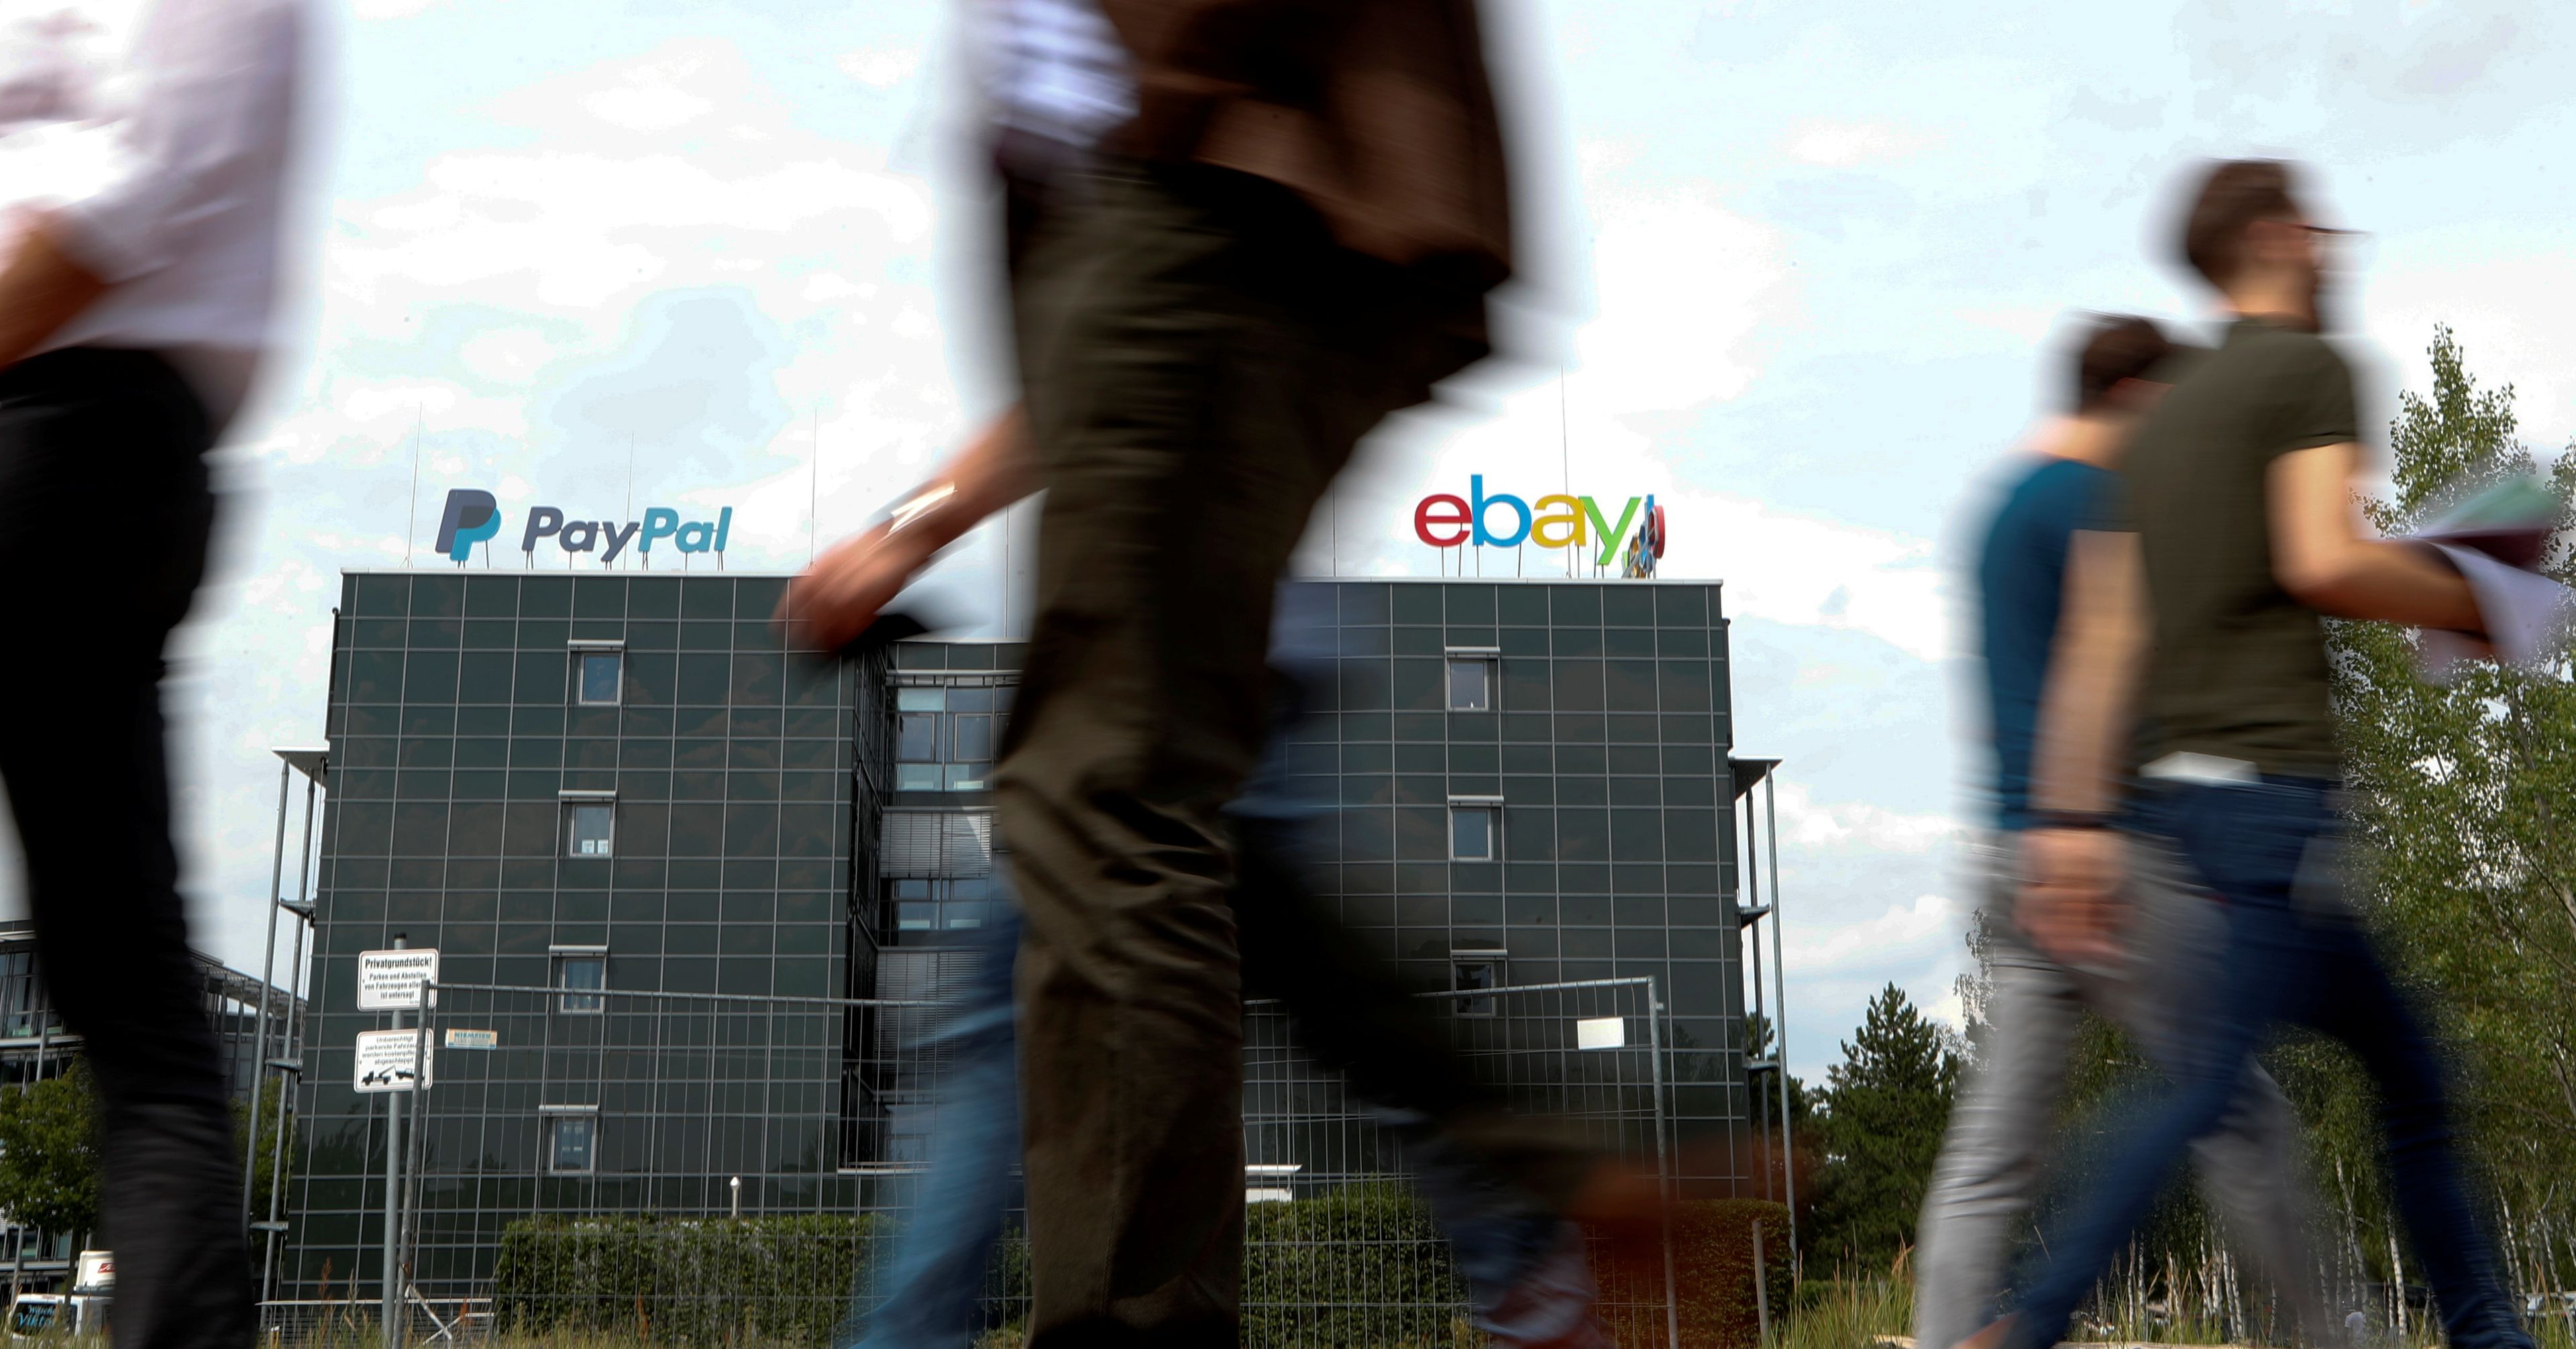 Oficinas de Paypal y eBay en Berlín (Alemania)